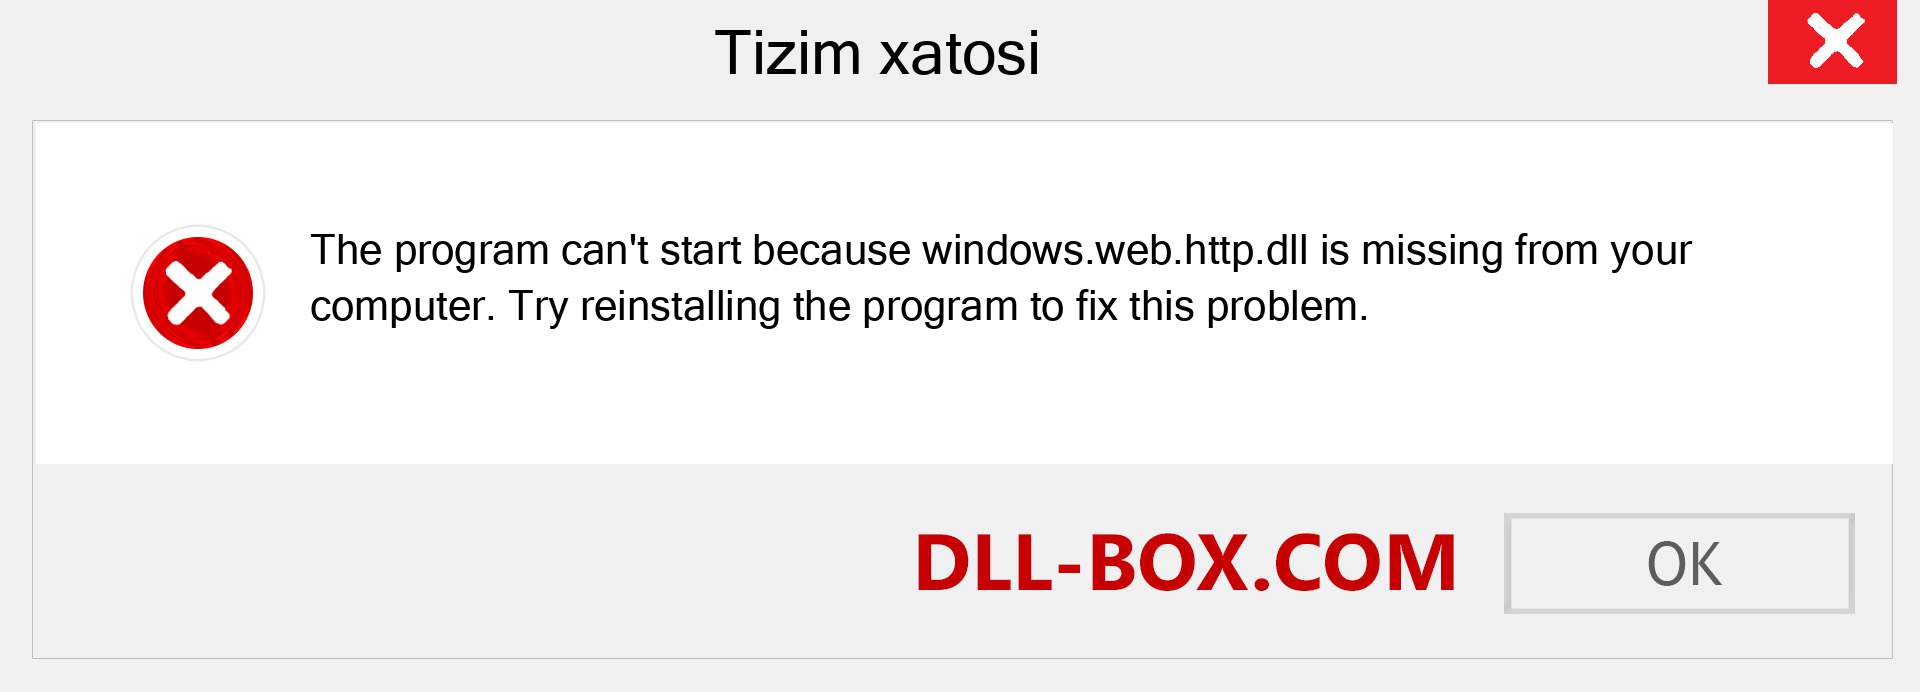 windows.web.http.dll fayli yo'qolganmi?. Windows 7, 8, 10 uchun yuklab olish - Windowsda windows.web.http dll etishmayotgan xatoni tuzating, rasmlar, rasmlar